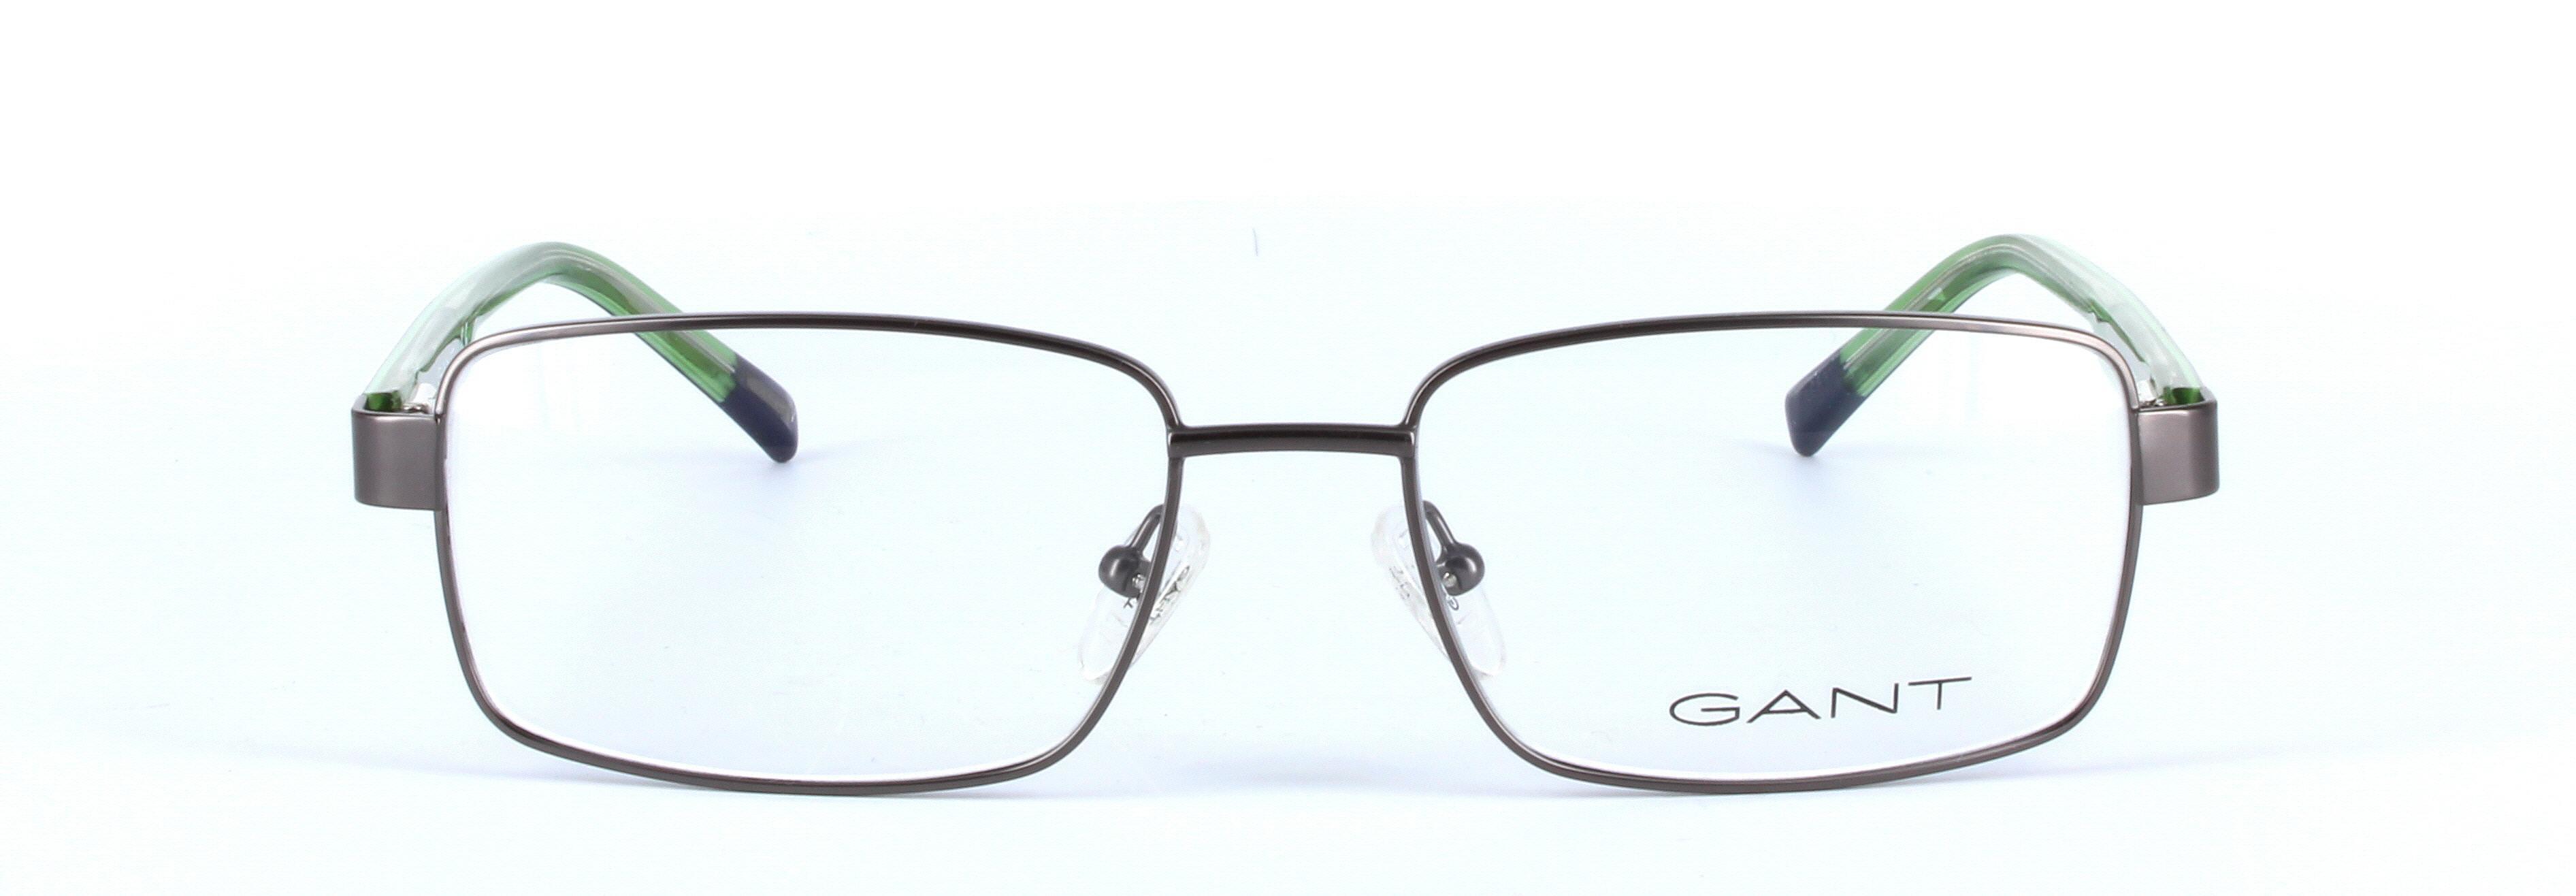 GANT (GA3102-049) Brown Full Rim Rectangular Metal Glasses - Image View 5